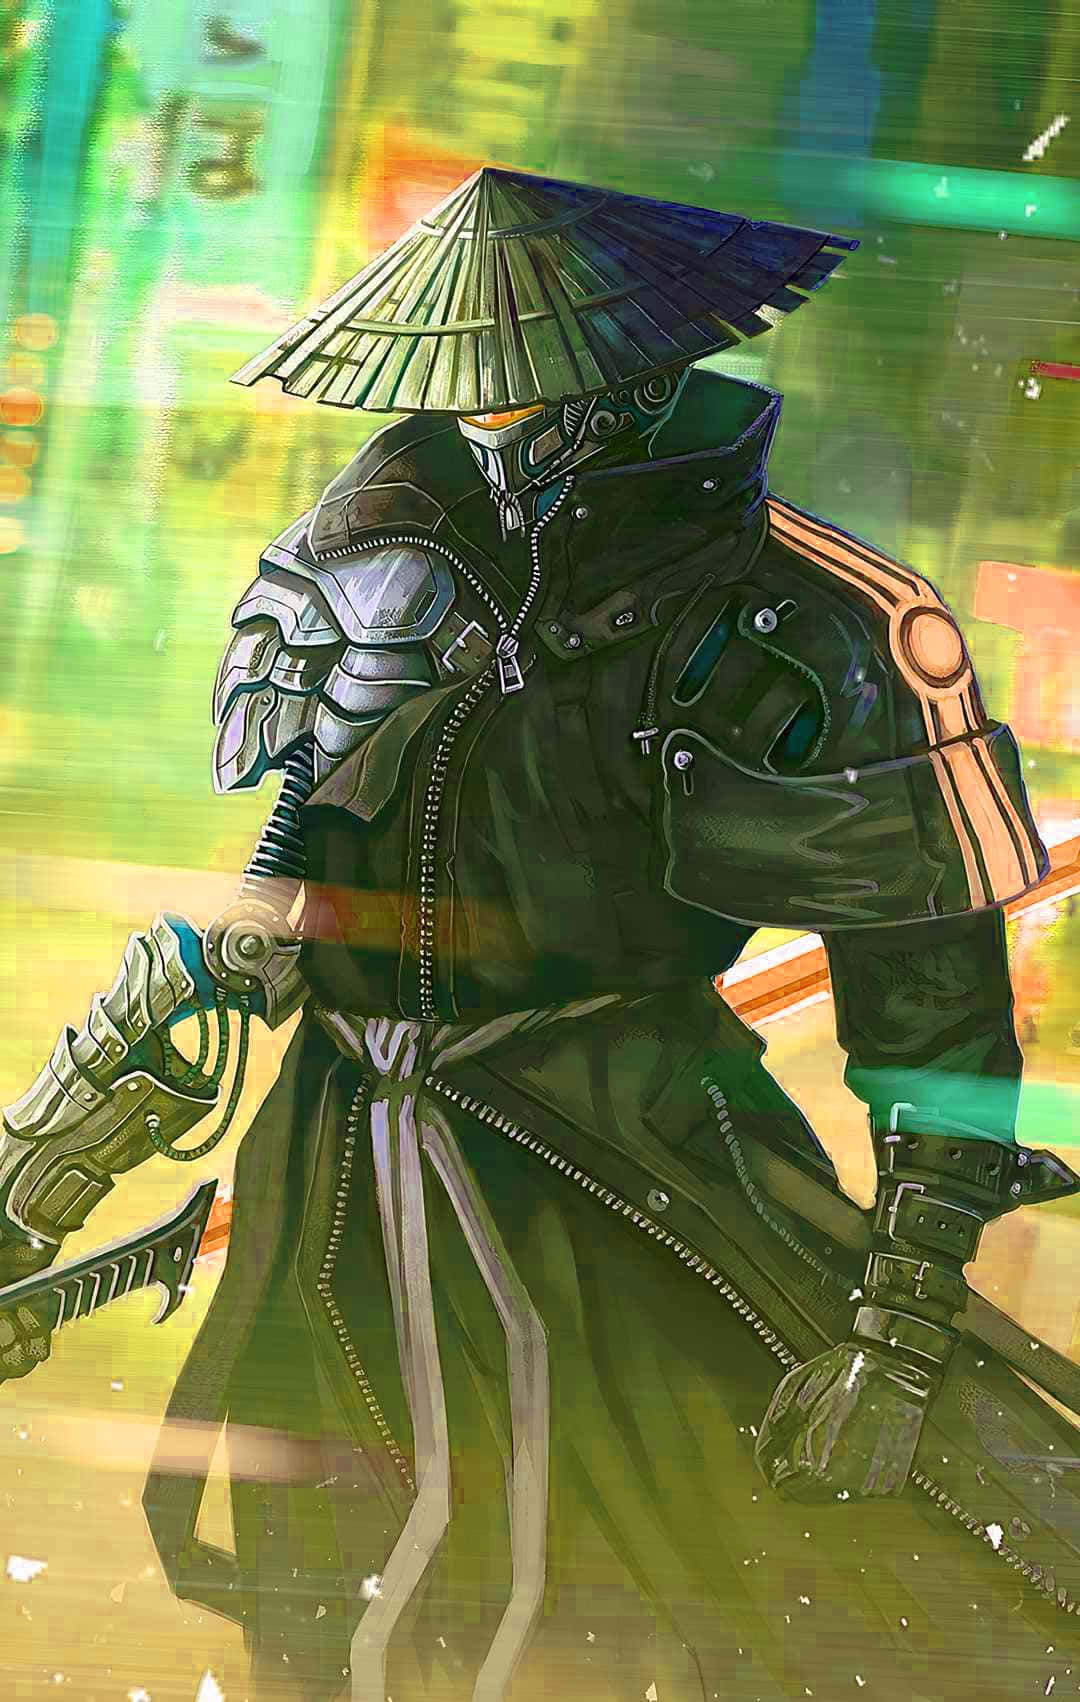 Samuraianime Japan Cyberpunk Ronin: Samuraj Anime Japan Cyberpunk Ronin. Wallpaper